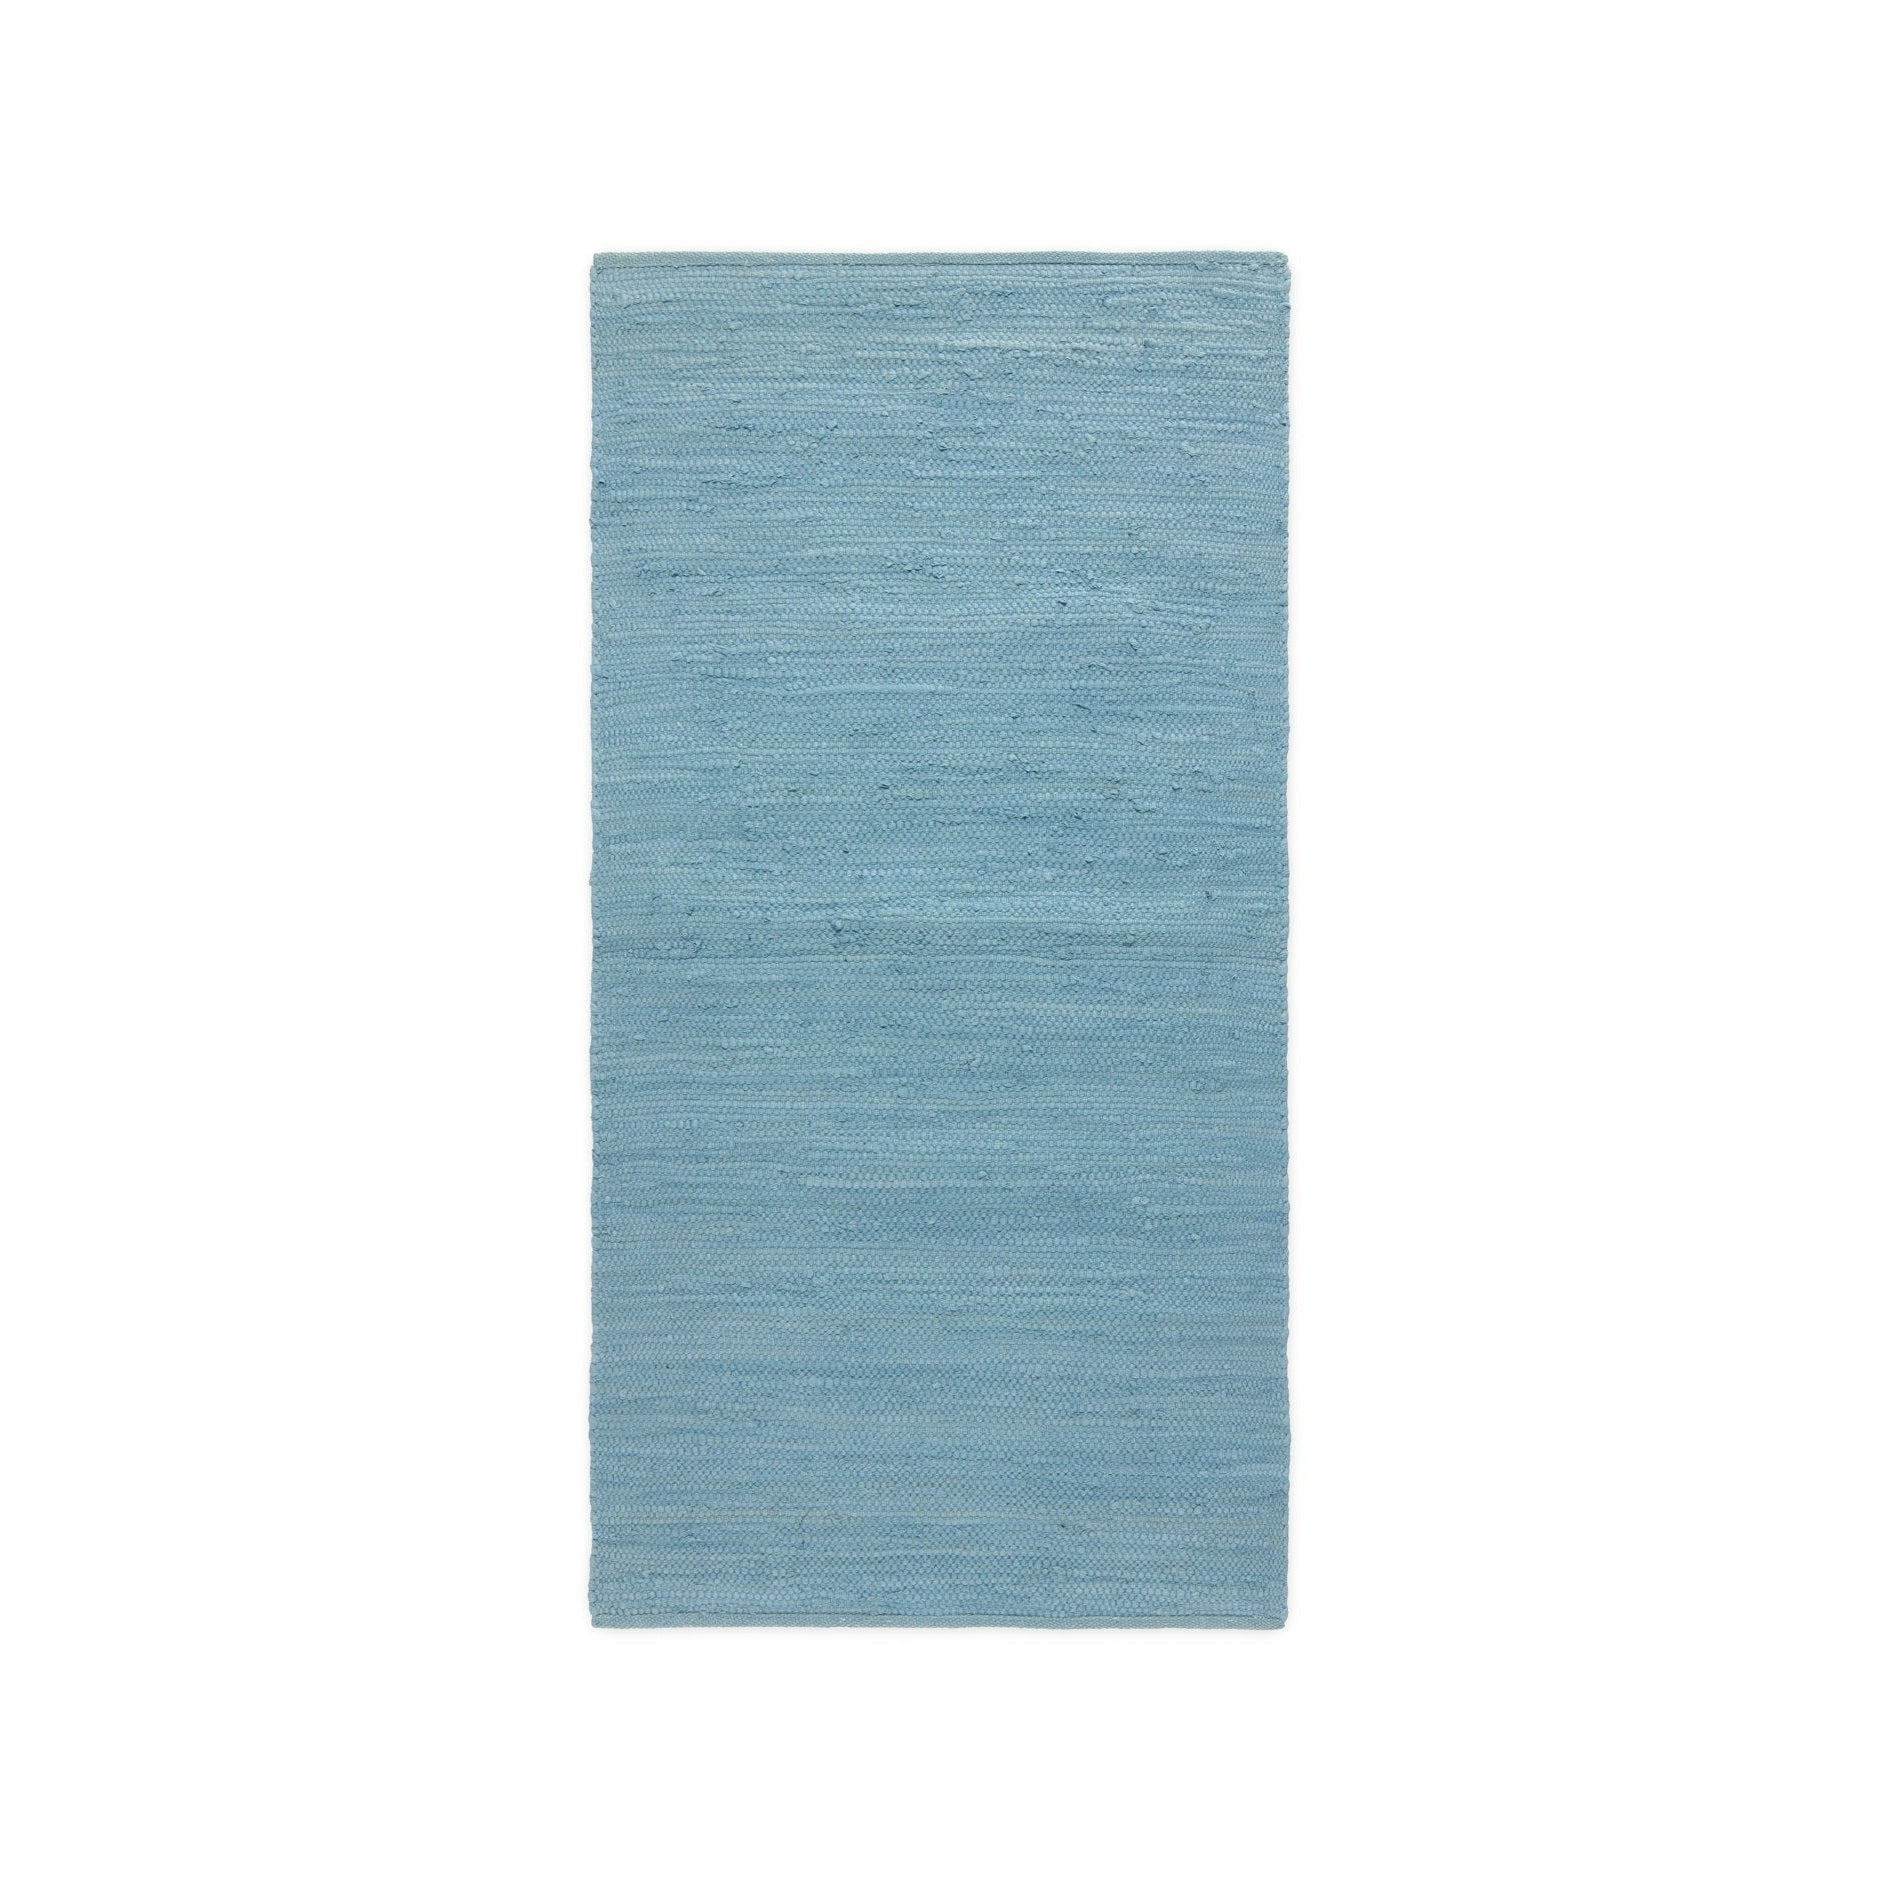 Rug Solid Bomullsmatta evigheten blå, 60 x 90 cm